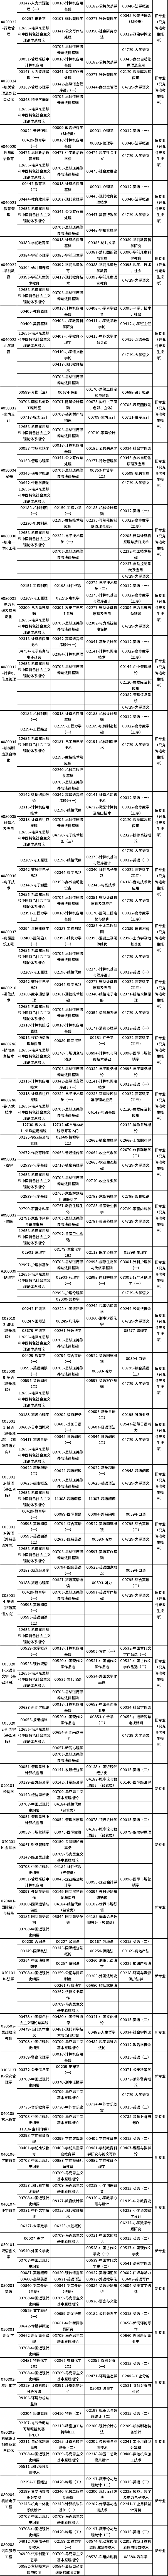 广西2021年高等教育自学考试4月课程考试时间安排表